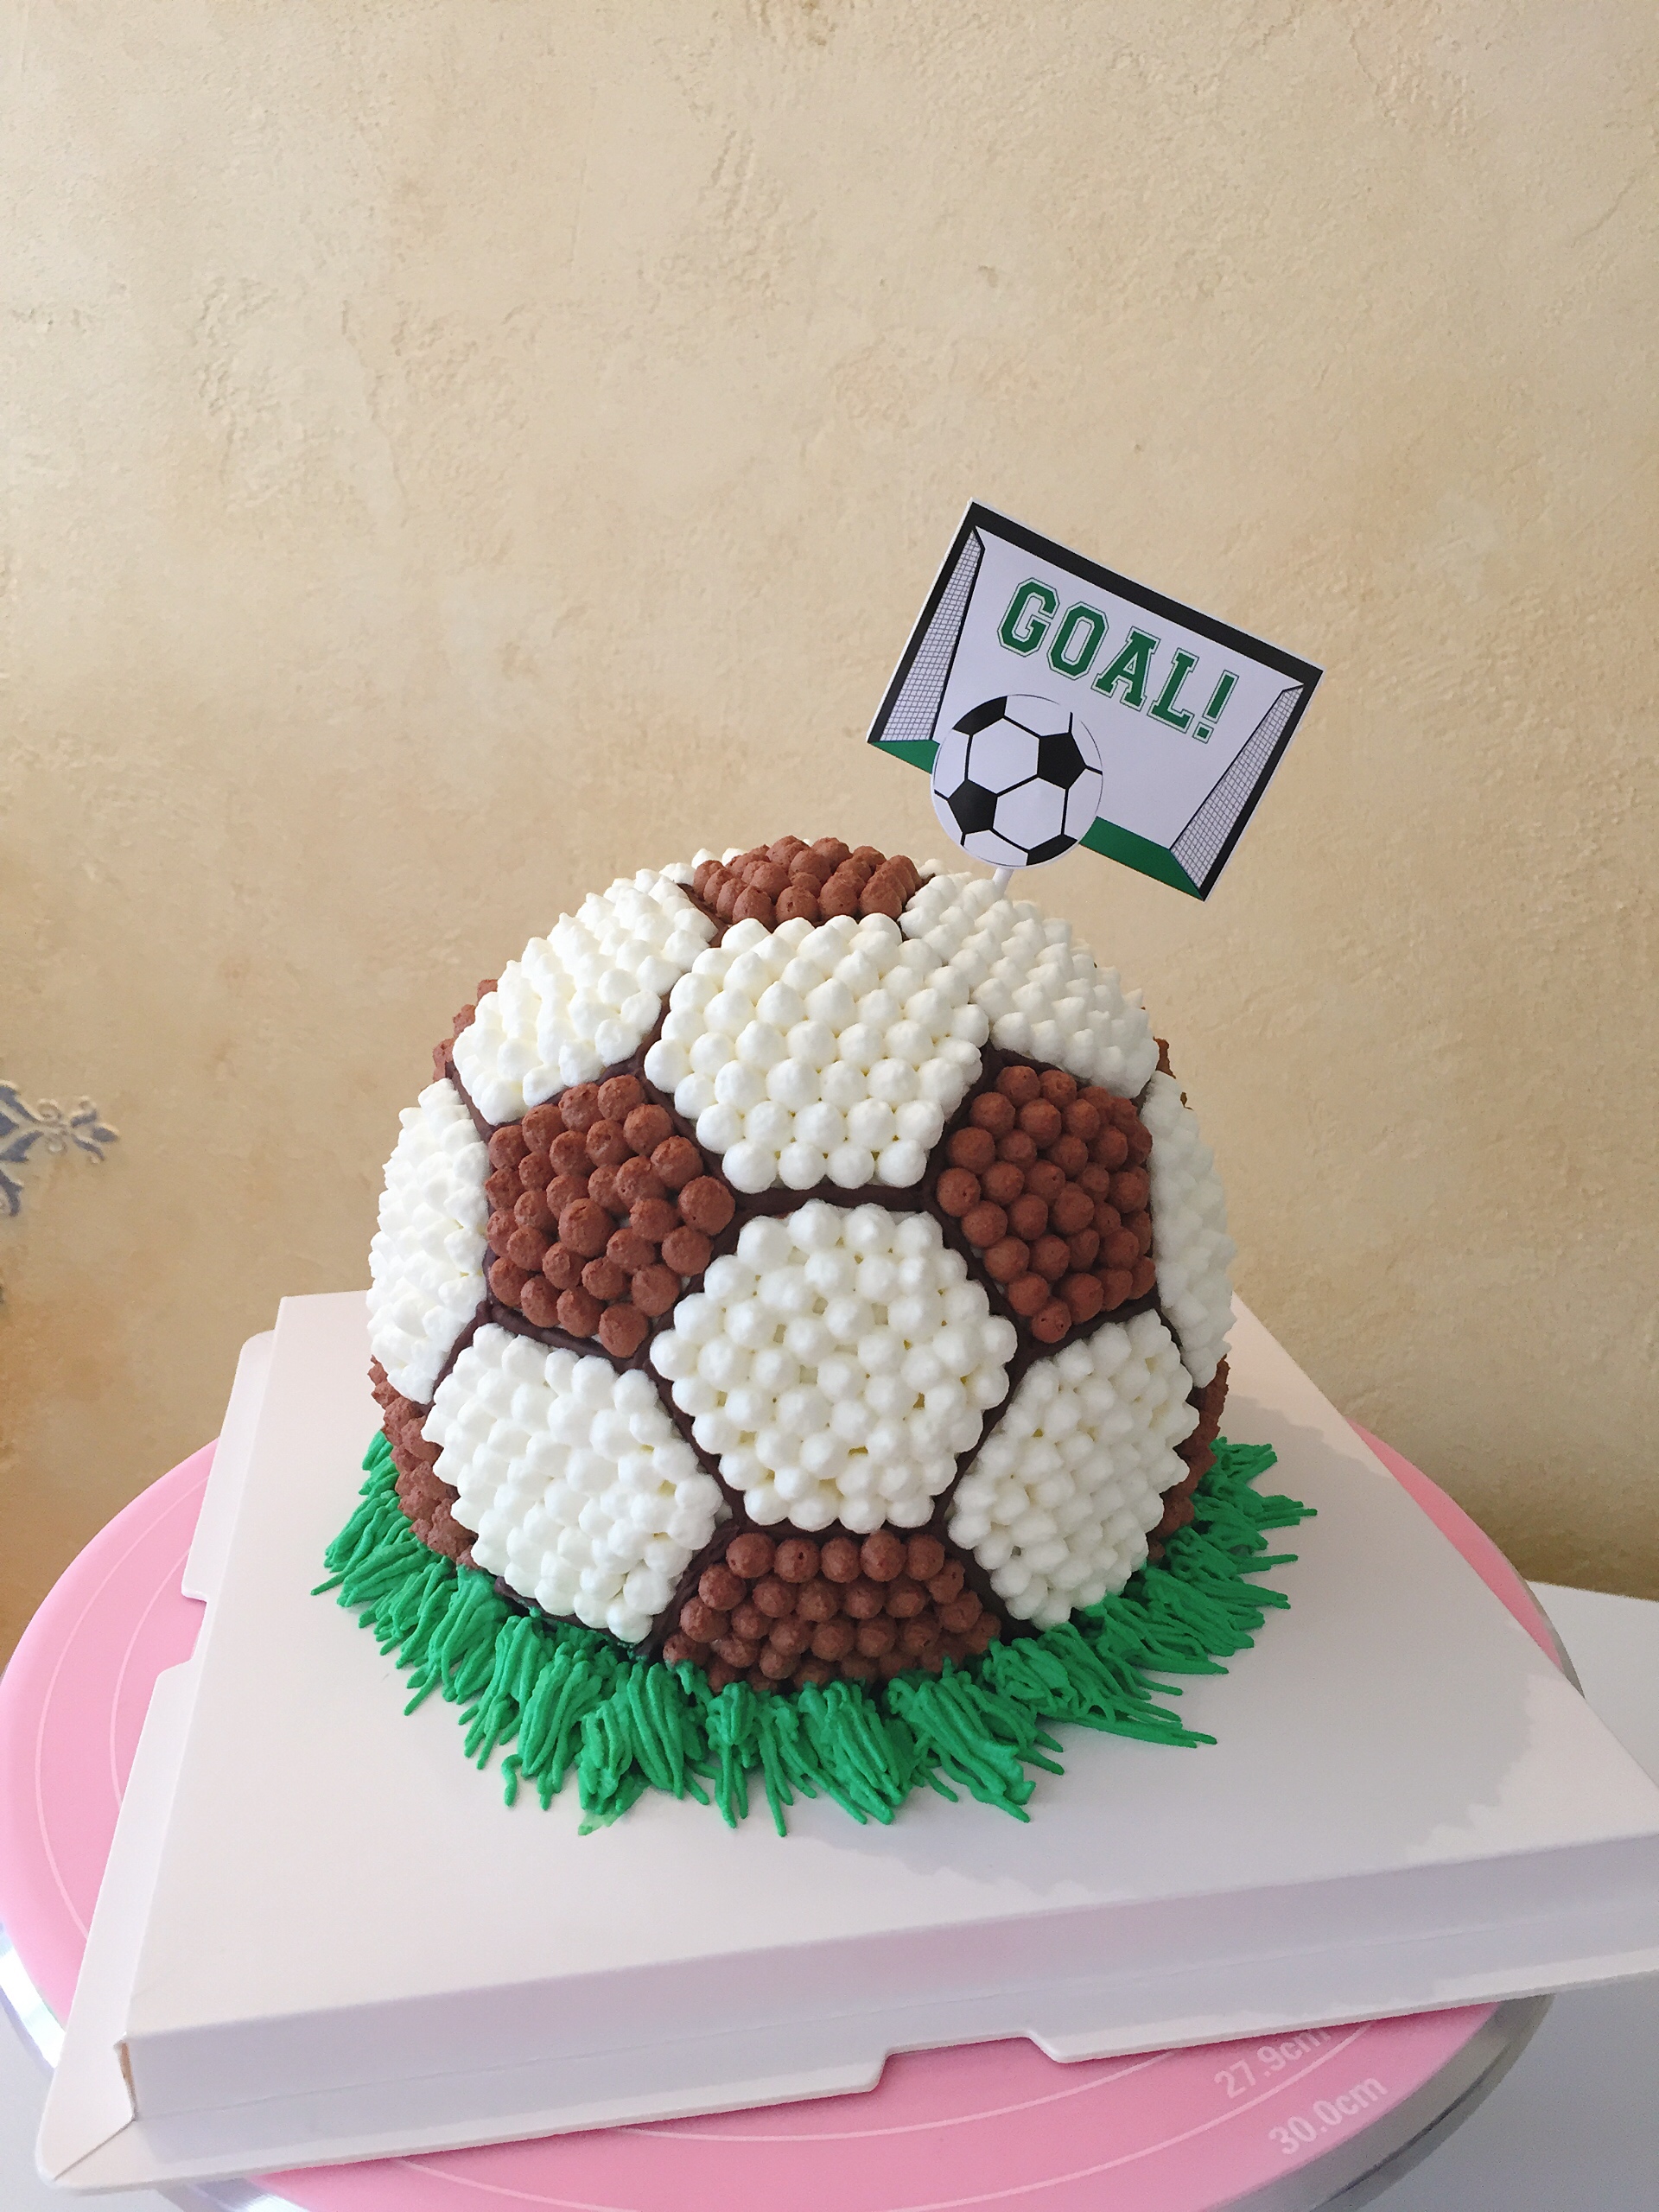 足球生日蛋糕的做法